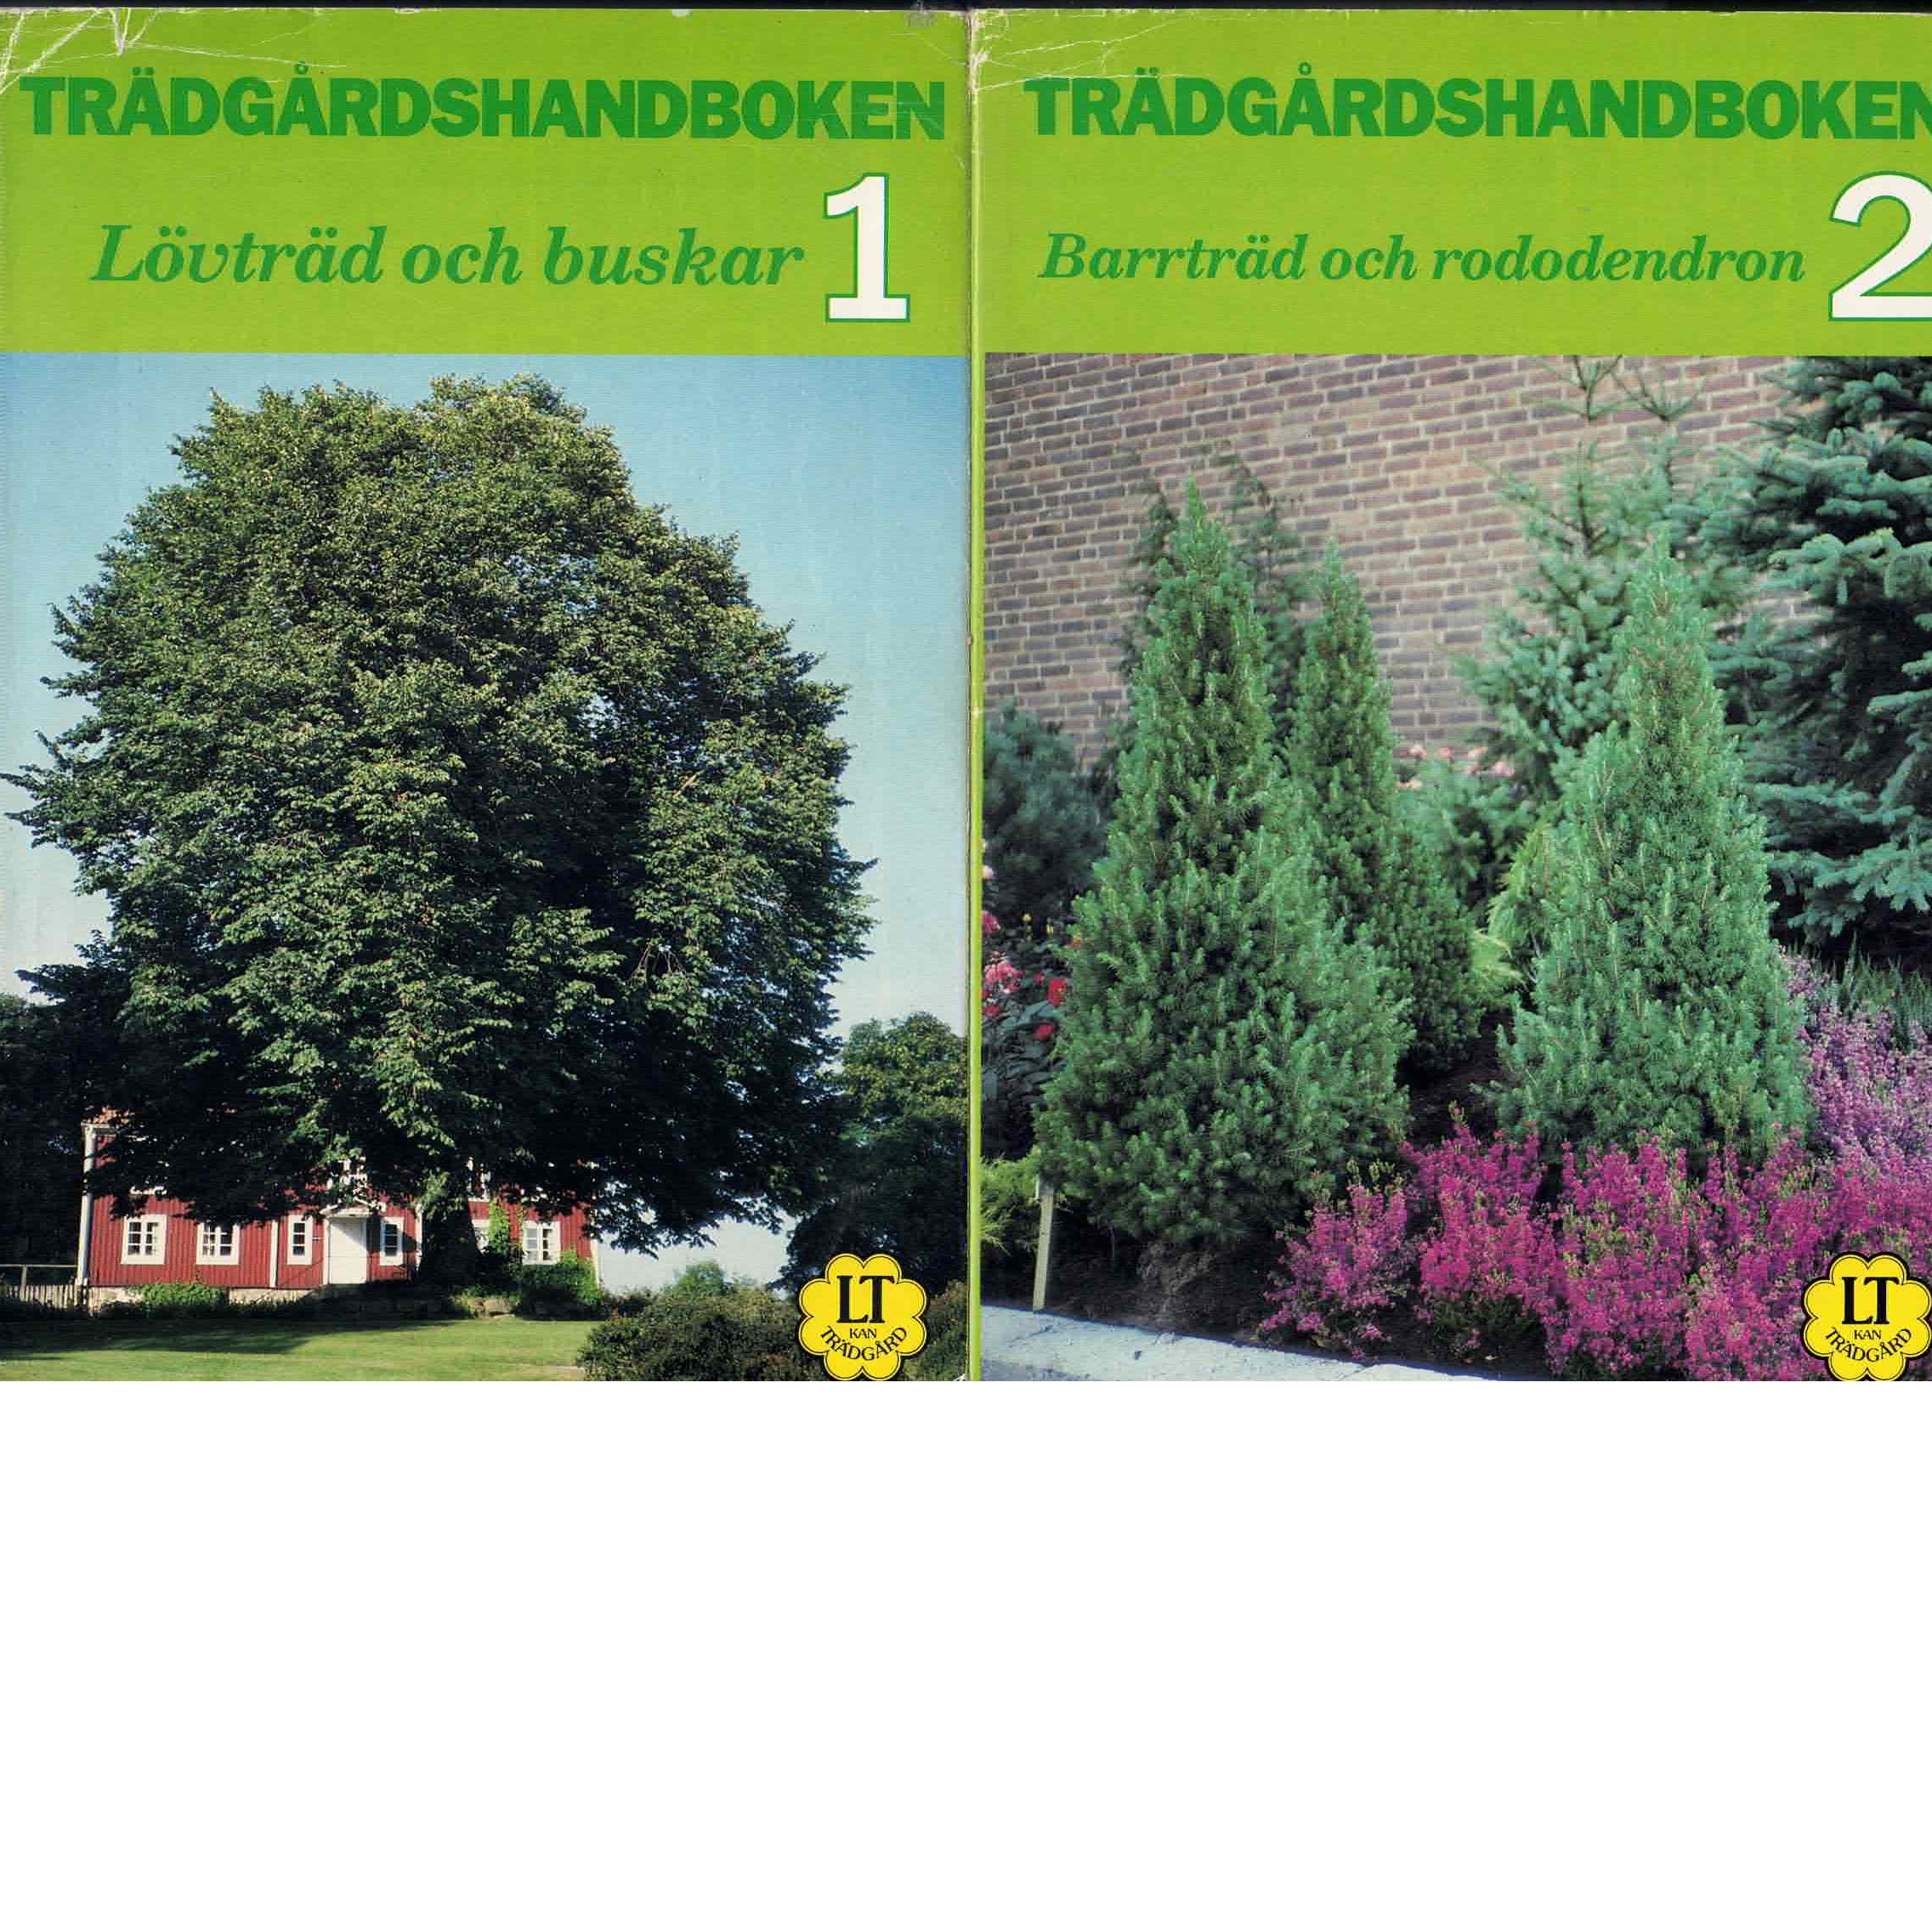 BdB handbok. D. 1, Lövträd och buskar och D. 2, Barrträd och rhododendron - Red.